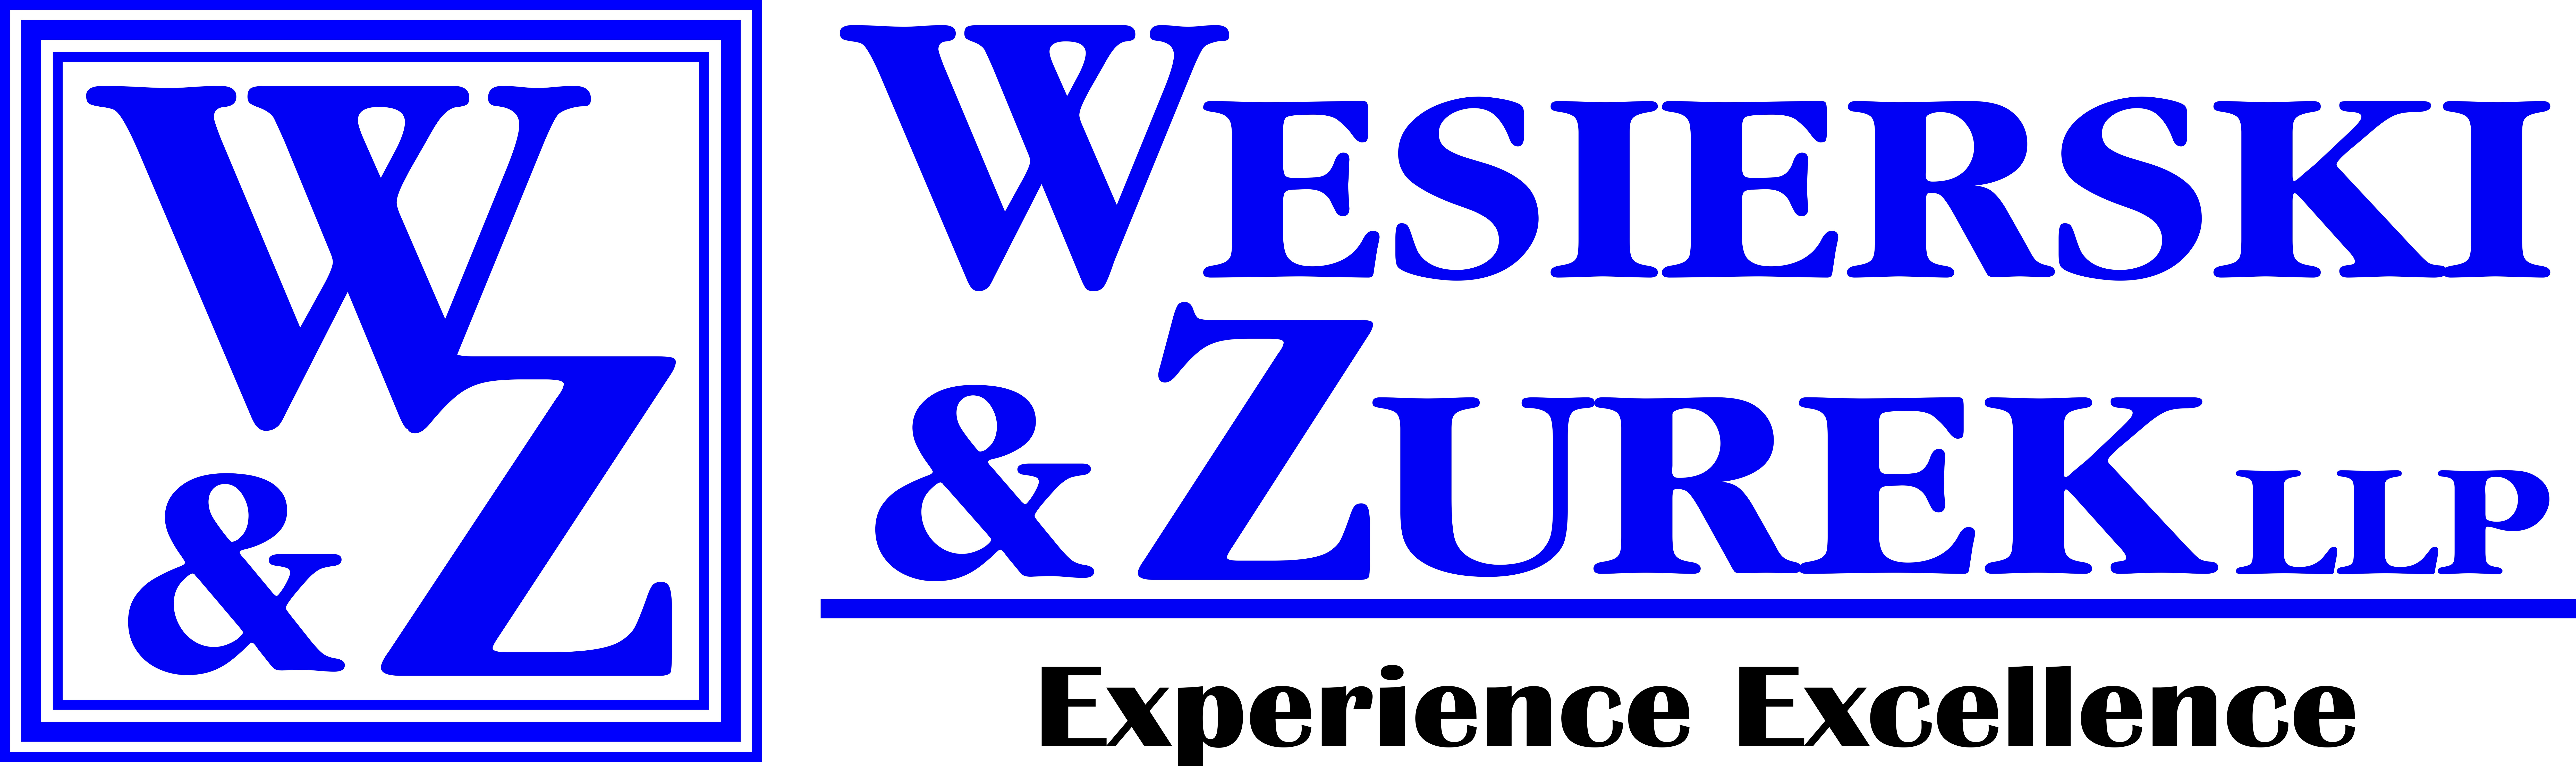 Wesierski & Zurek LLP